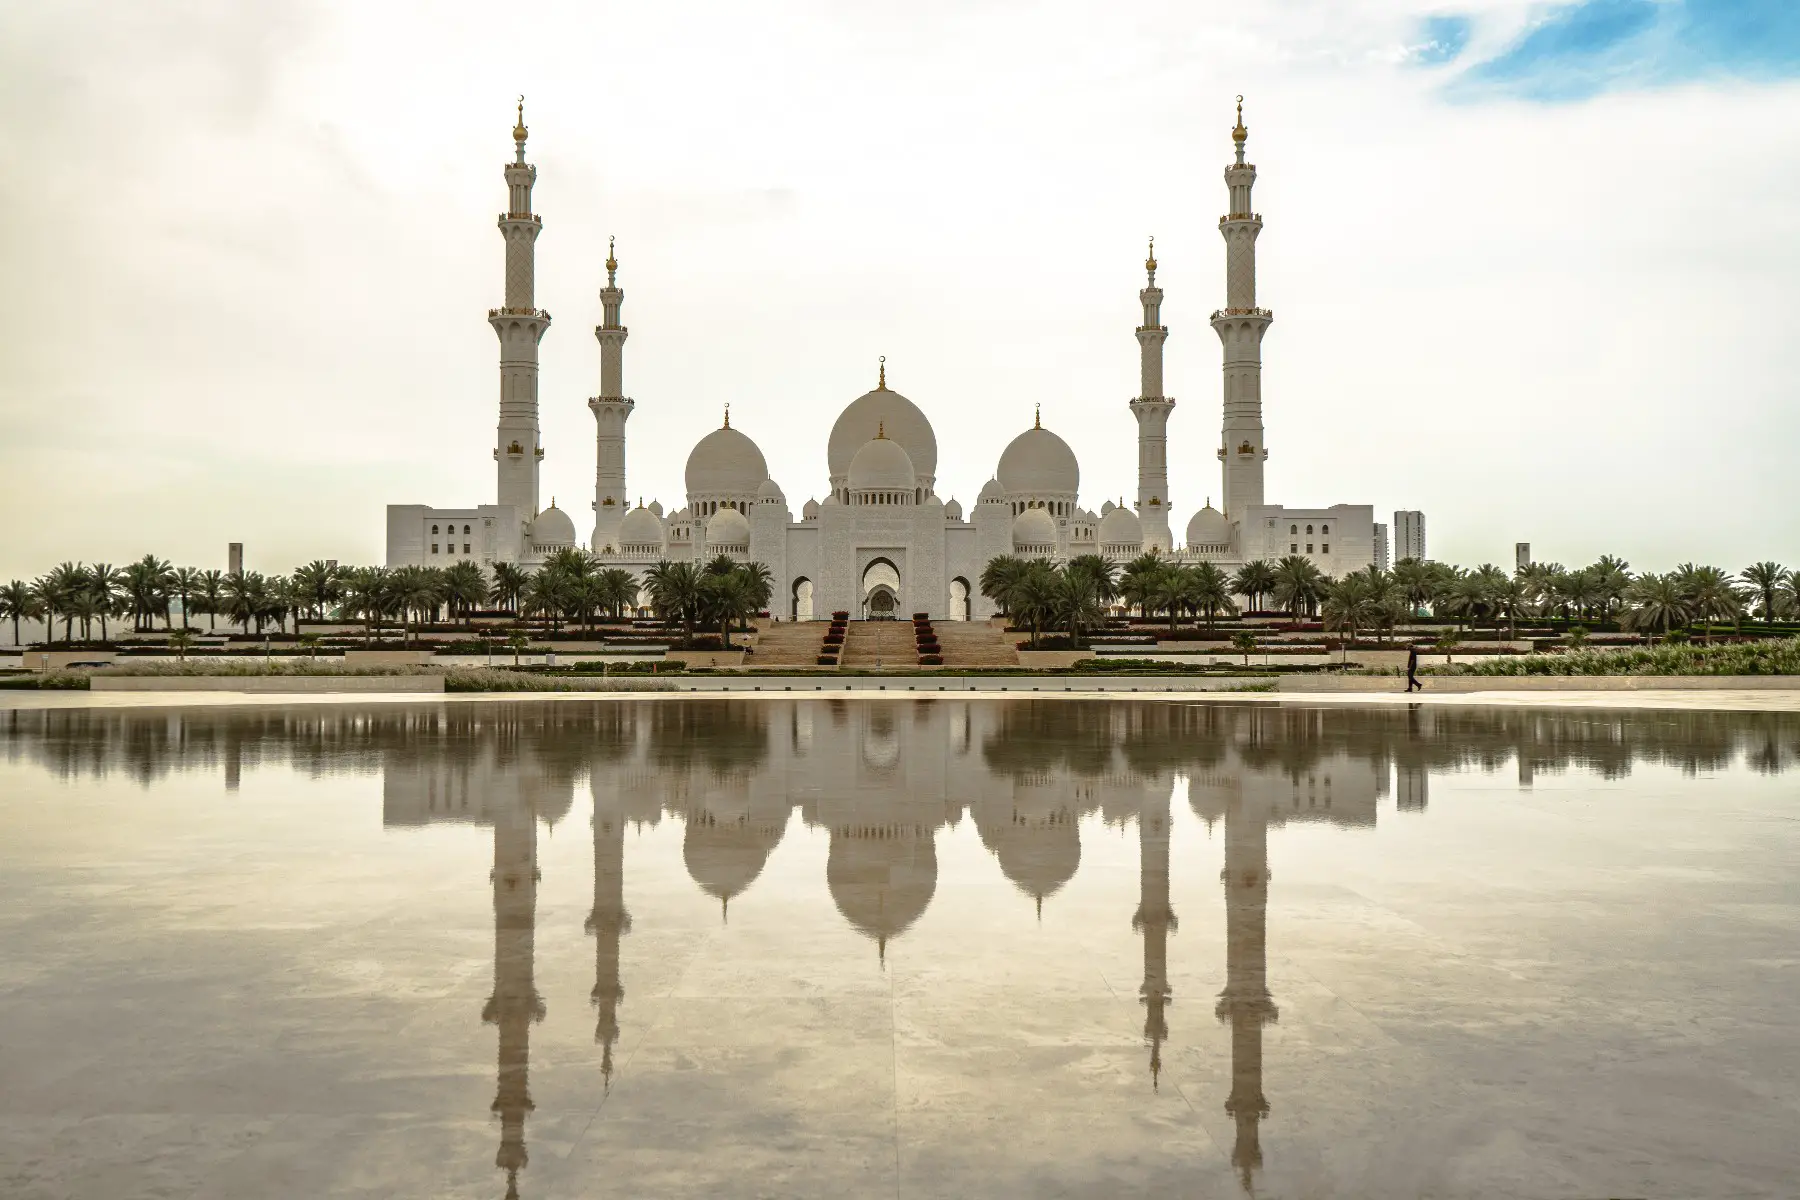 Sheik Zayed Mosque in Abu Dhabi, UAE